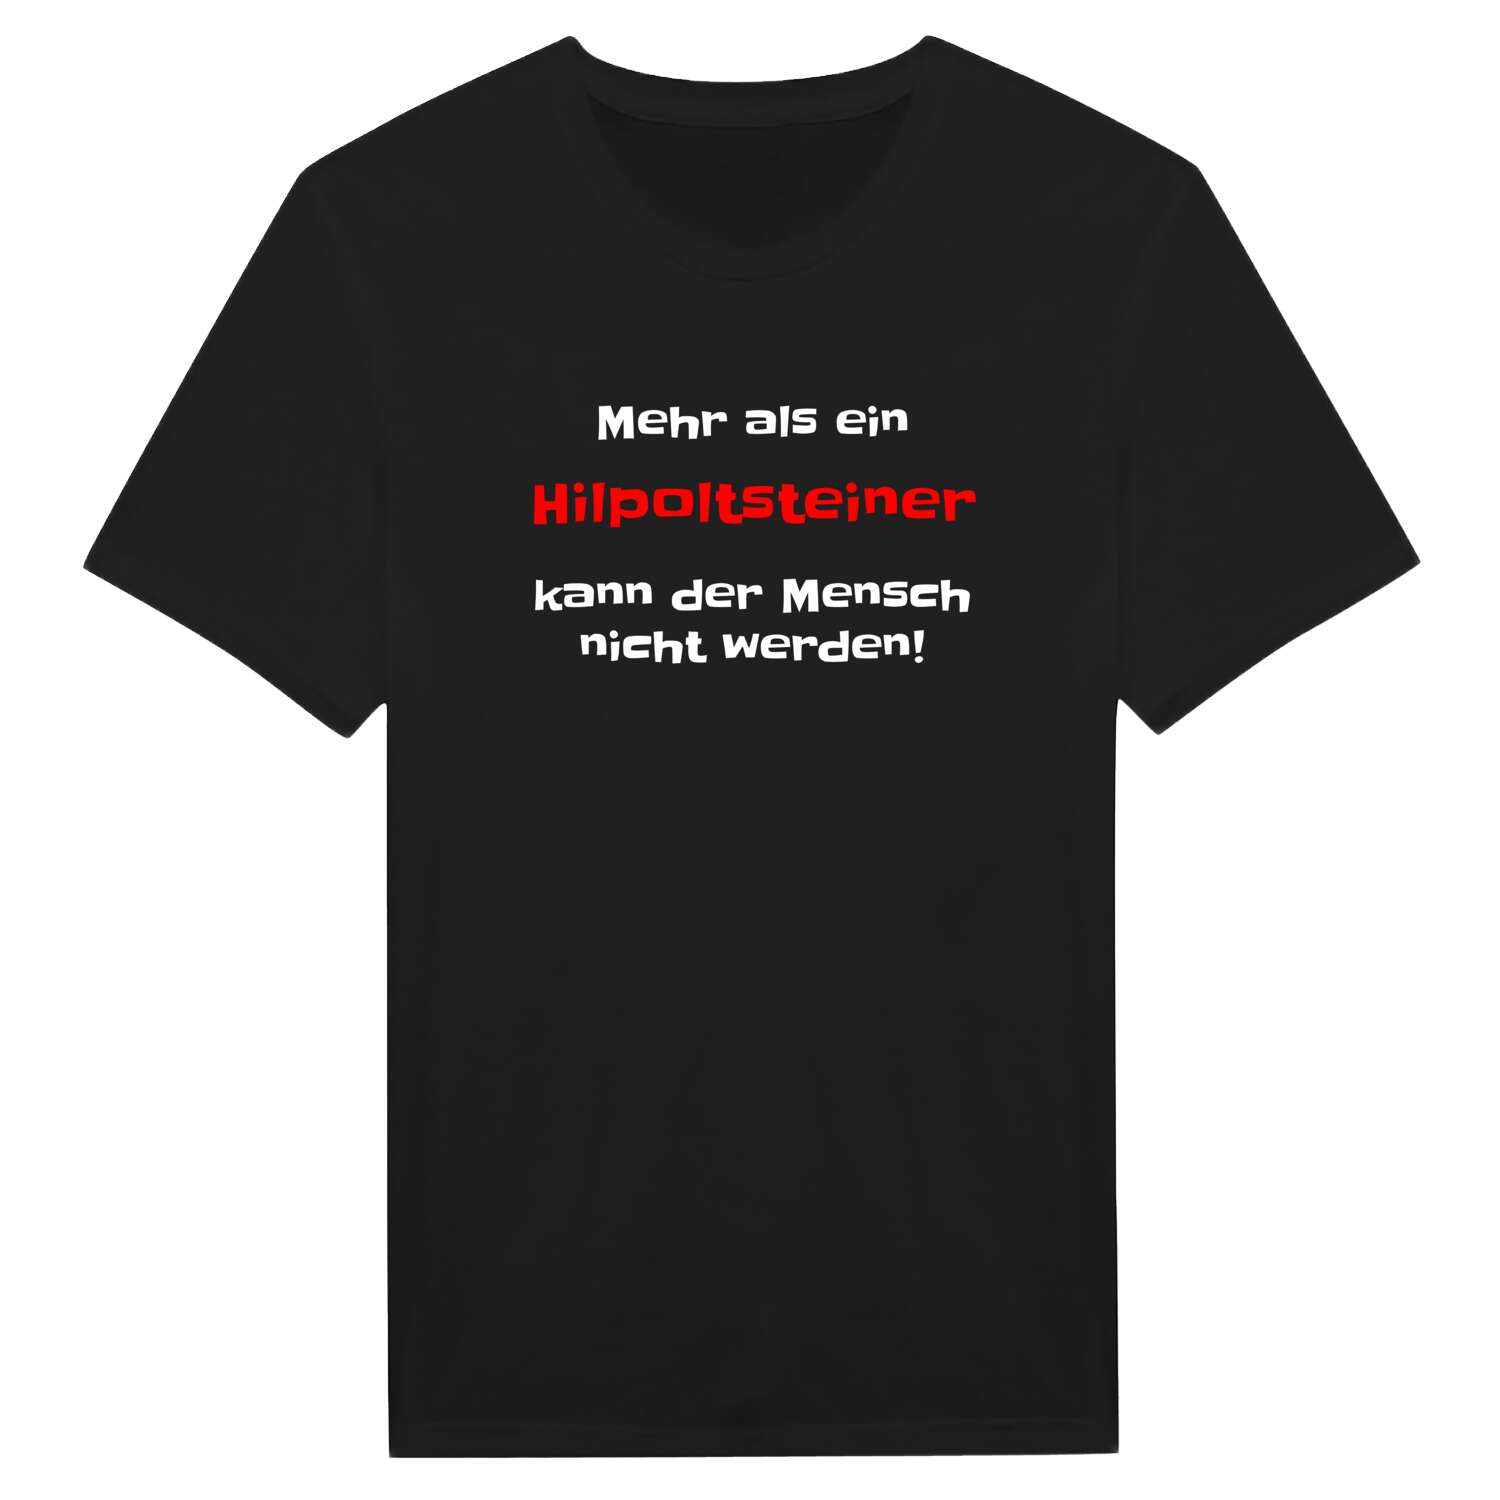 Hilpoltstein T-Shirt »Mehr als ein«